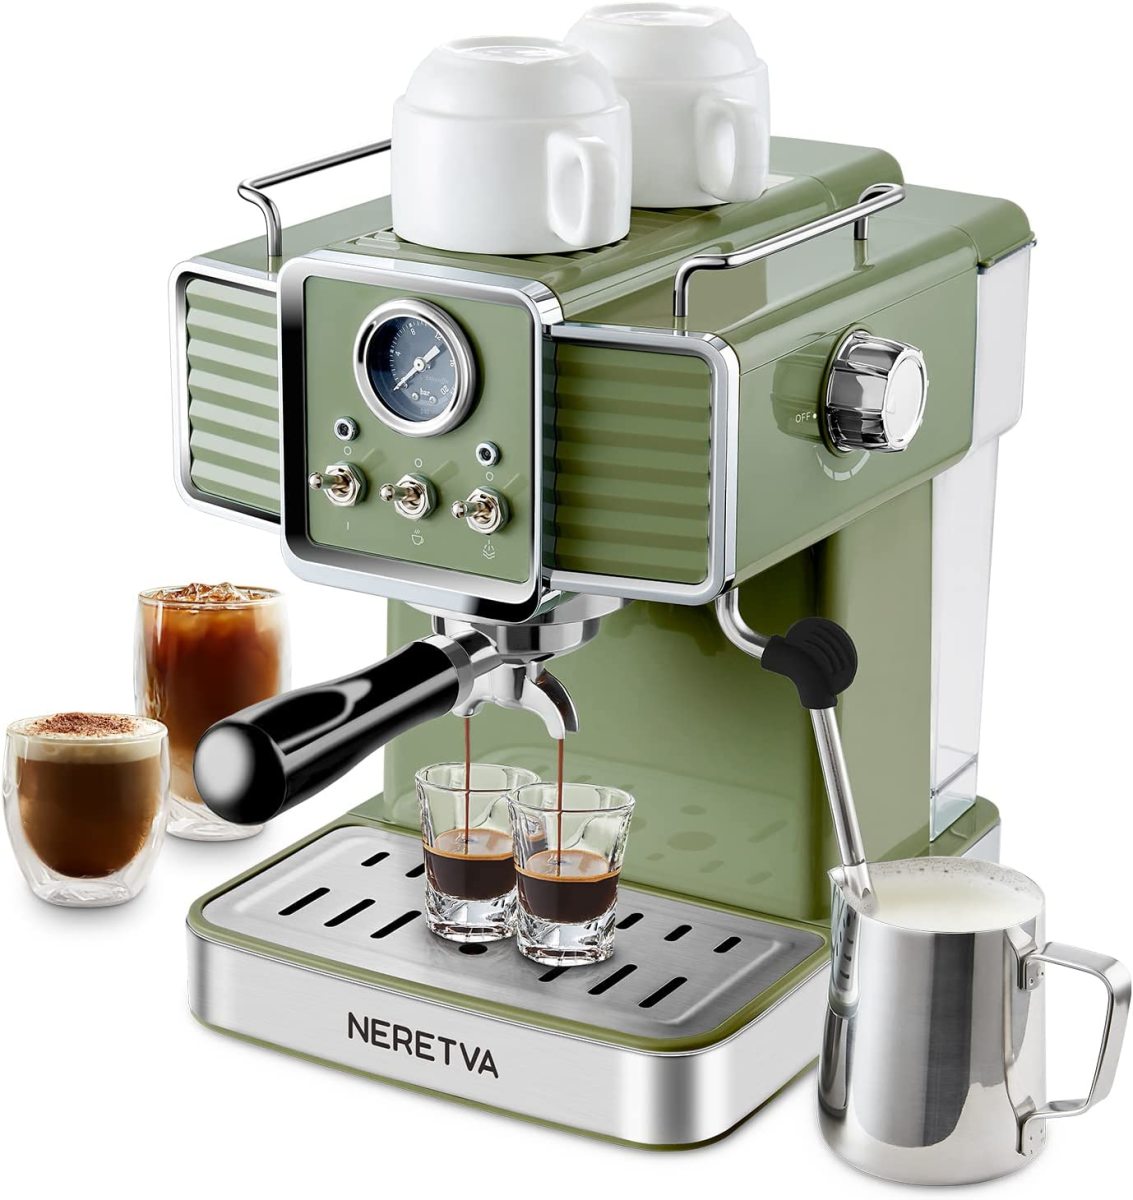 Neretva espresso coffee machine